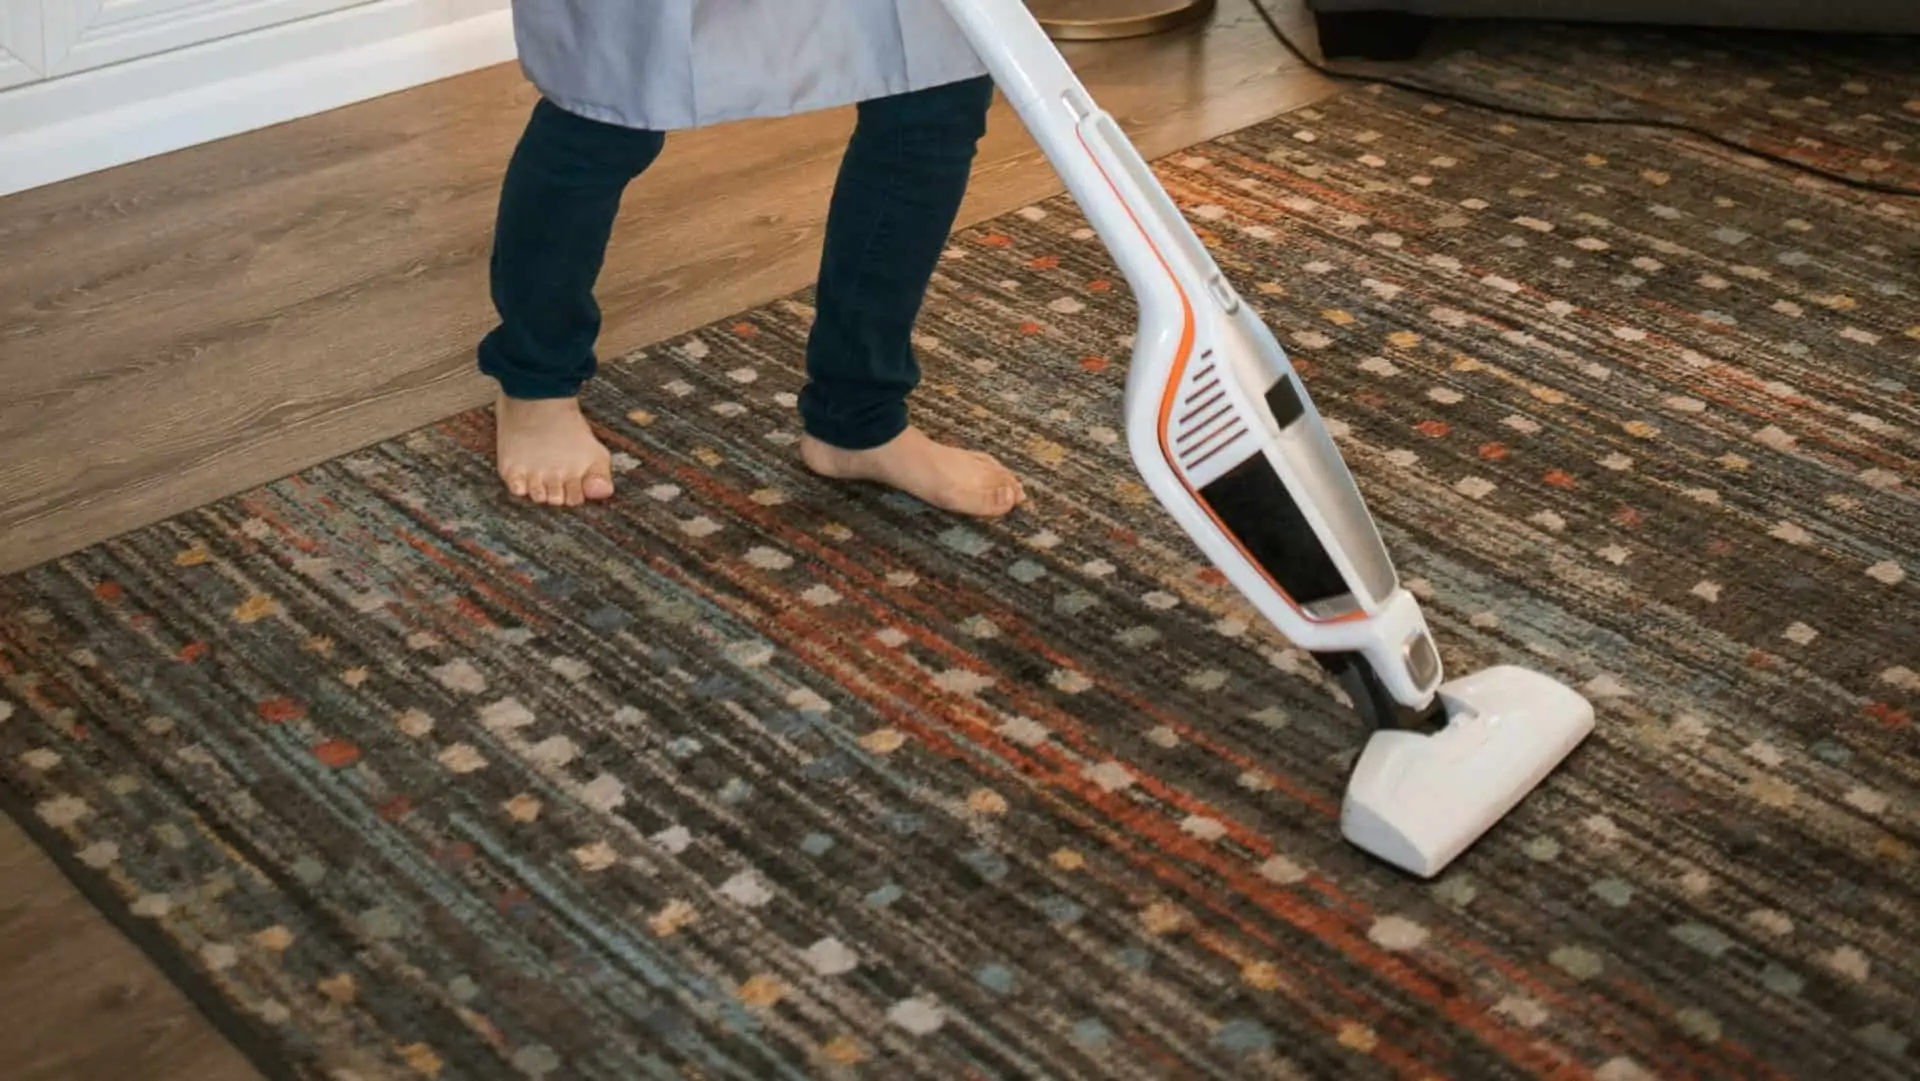 Persoon stofzuigt tapijt.